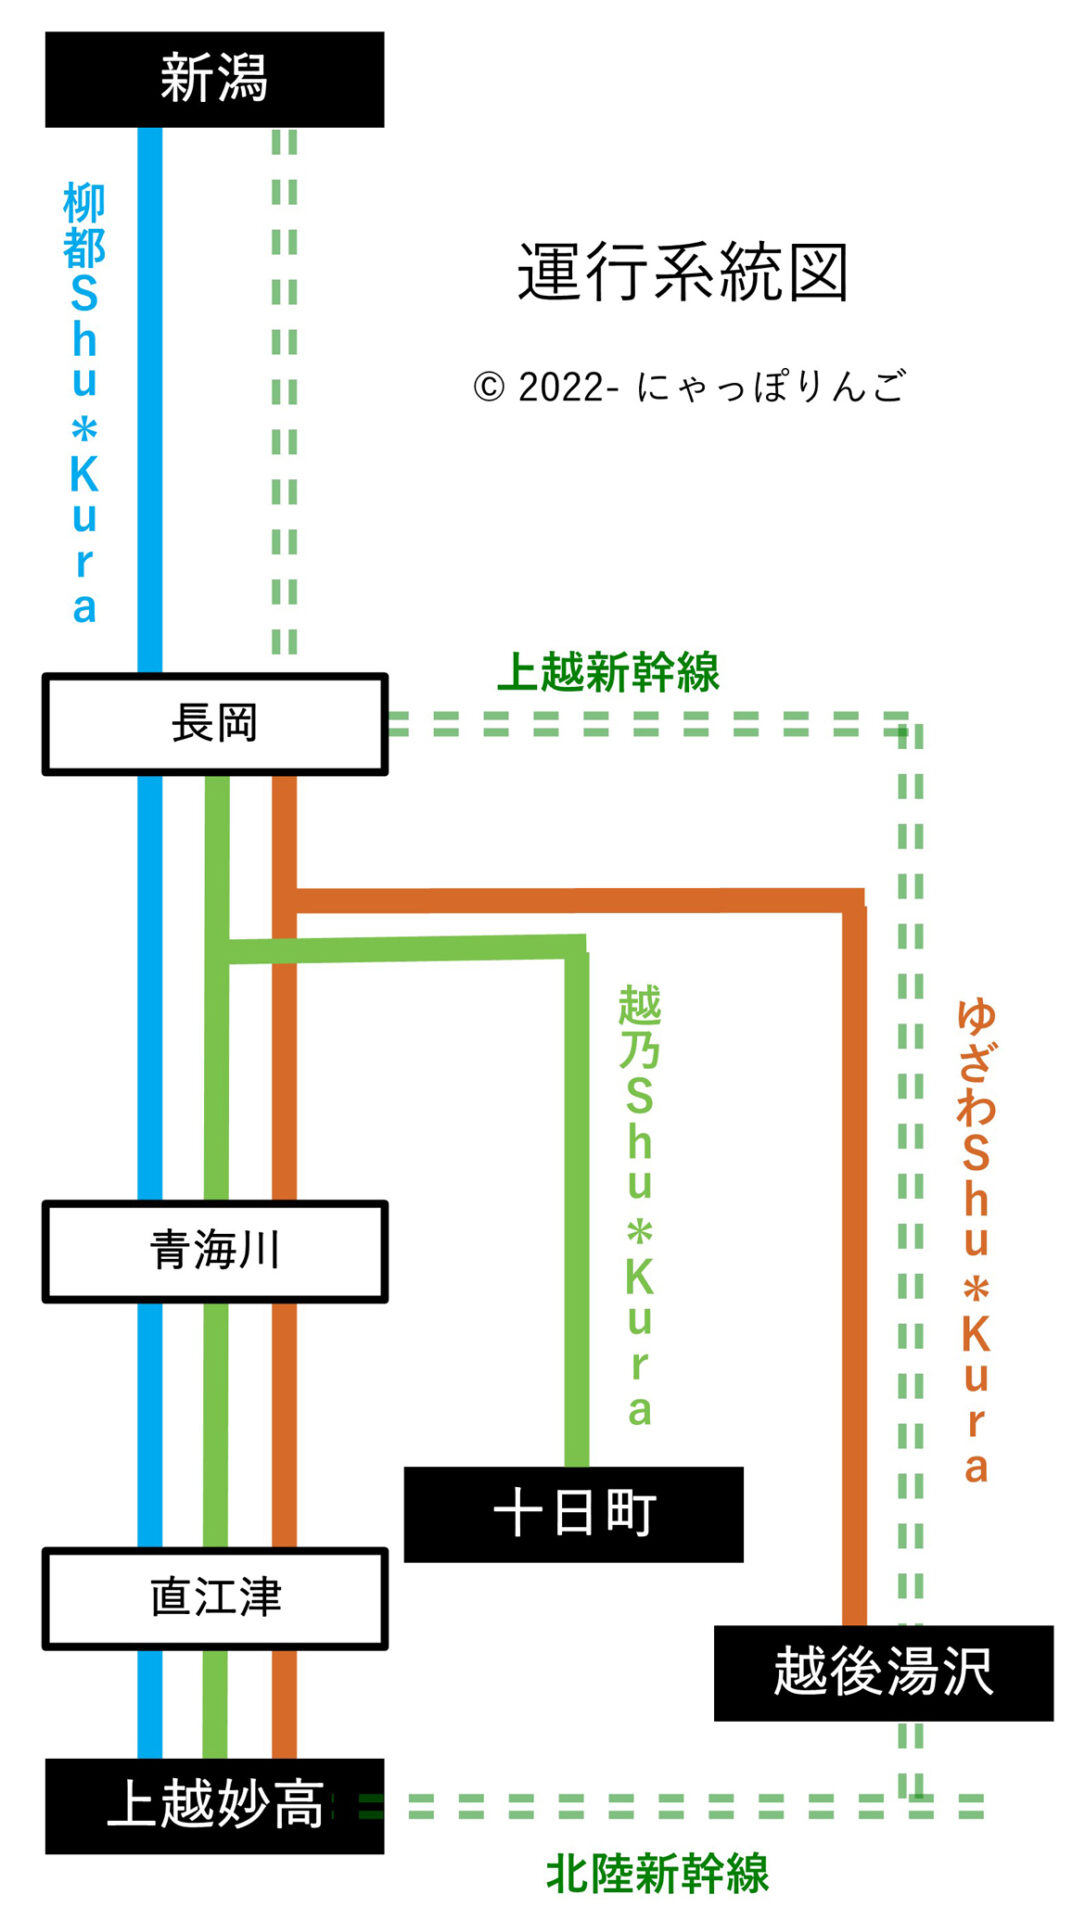 越乃しゅくら号運行系統図